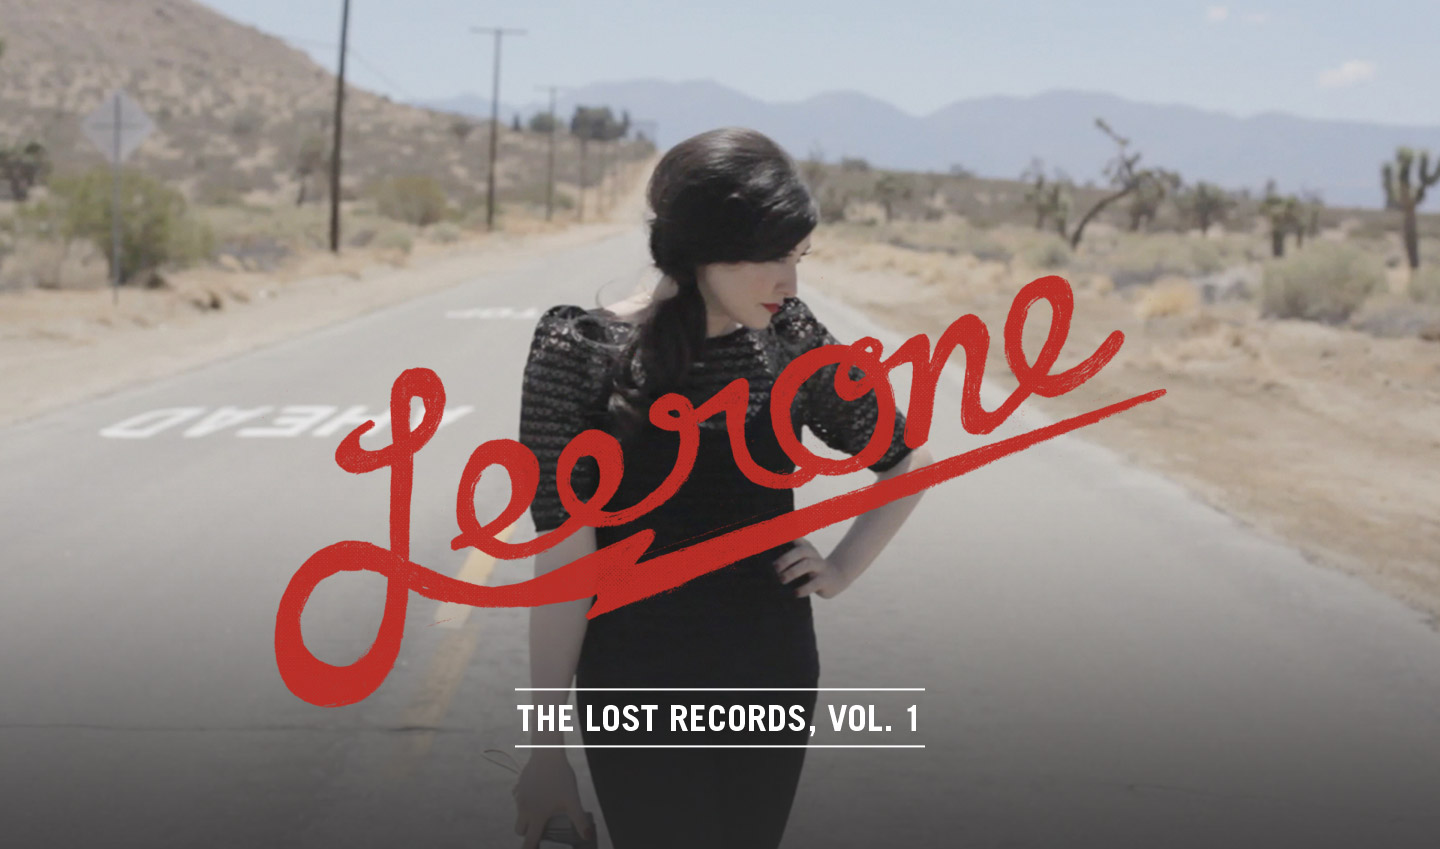 Leerone - The Lost Records, Vol. 1